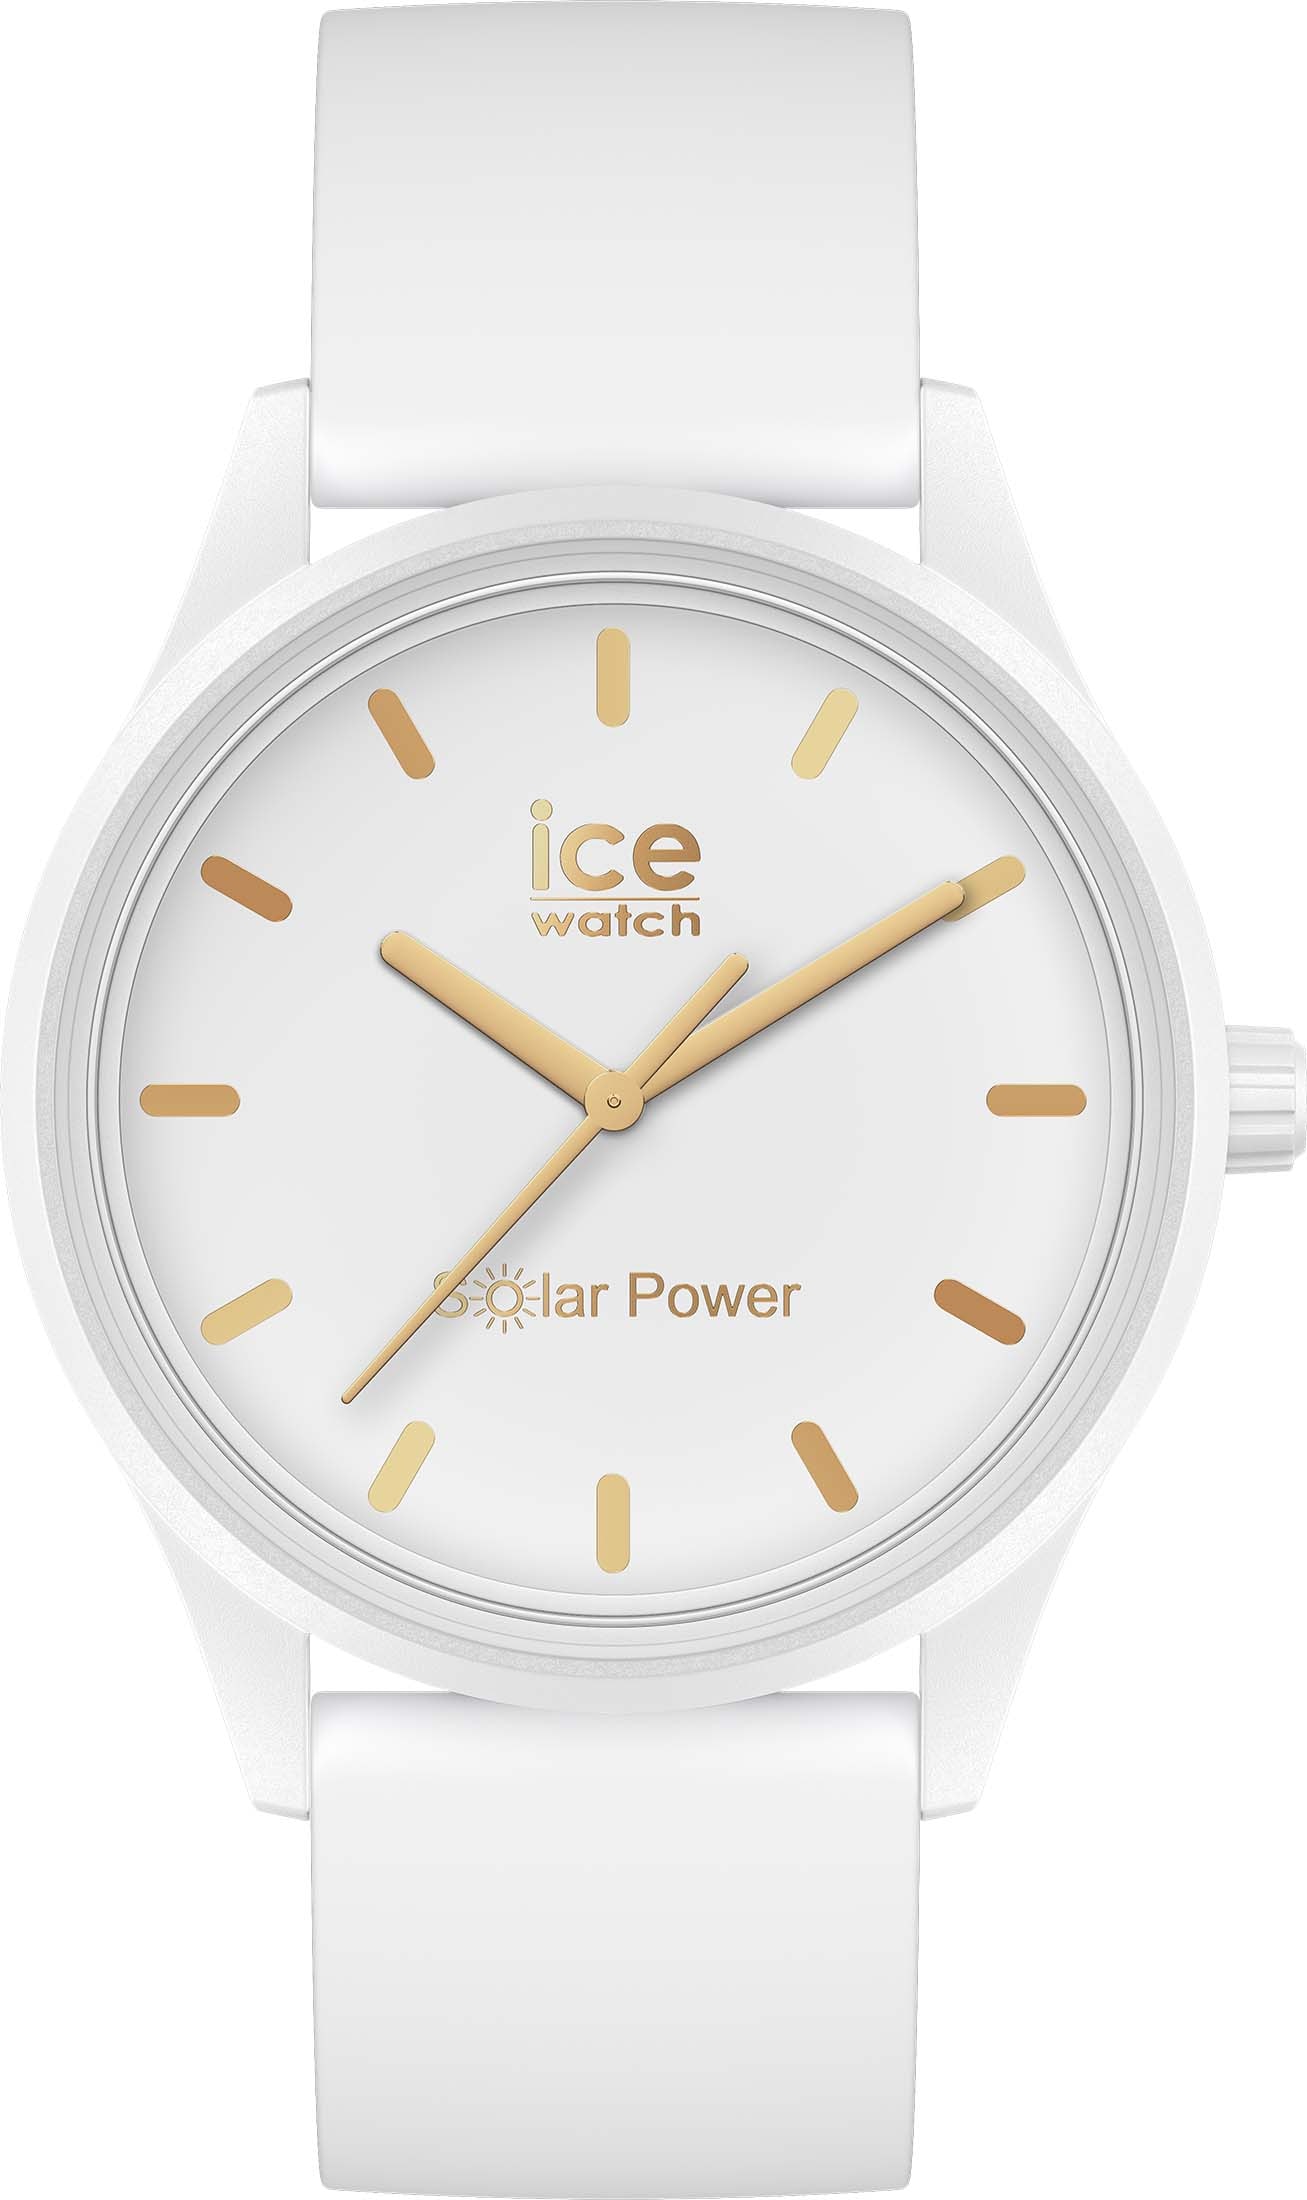 ice-watch Solaruhr »ICE Solar power-White gold bei bestellen 020301« OTTO M